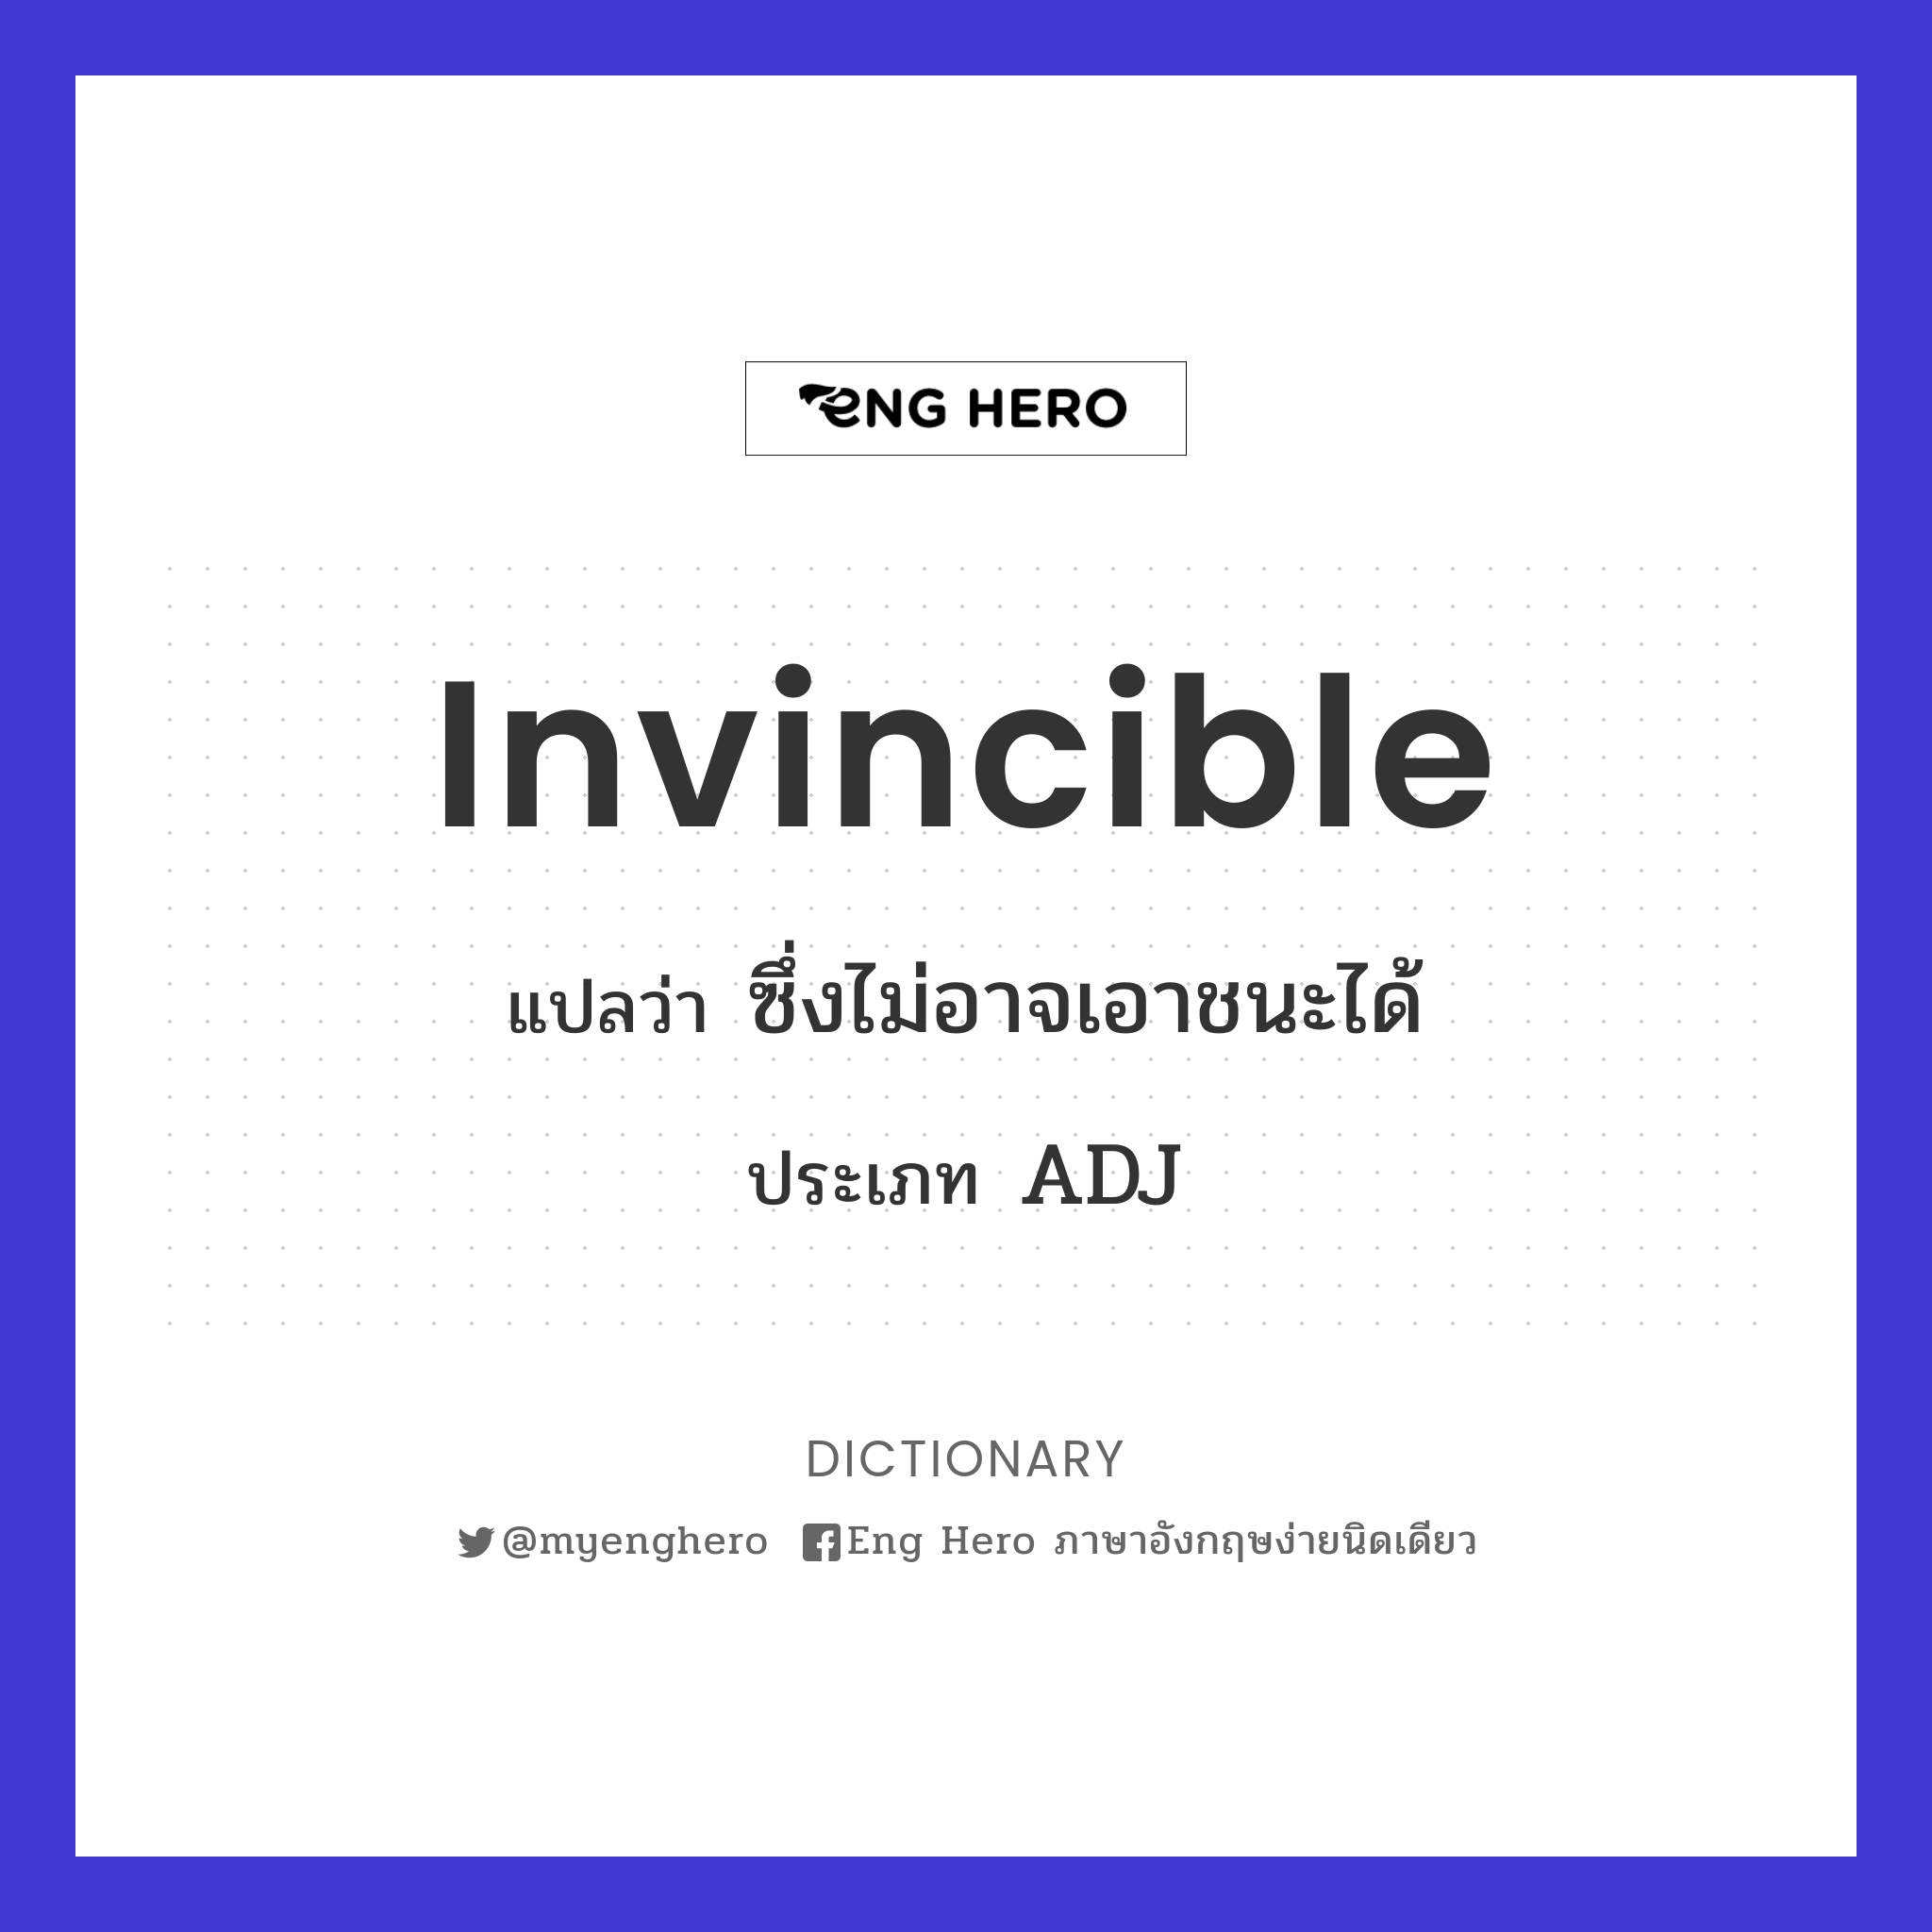 invincible